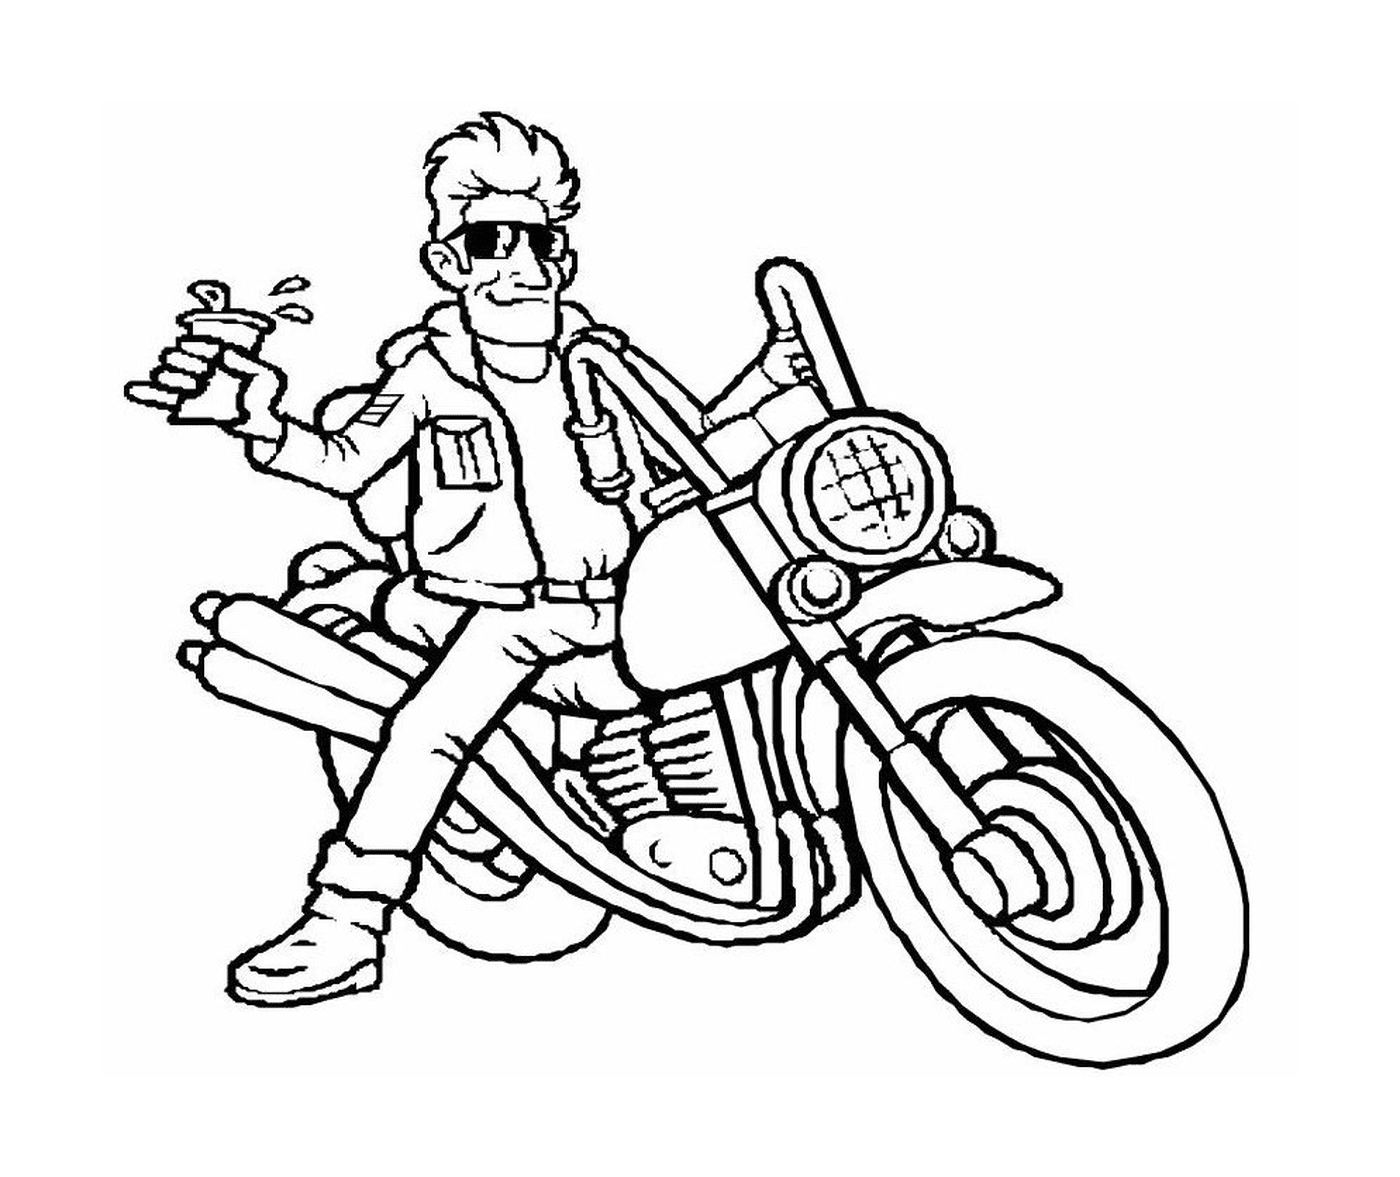  Uomo seduto sul retro di una motocicletta 